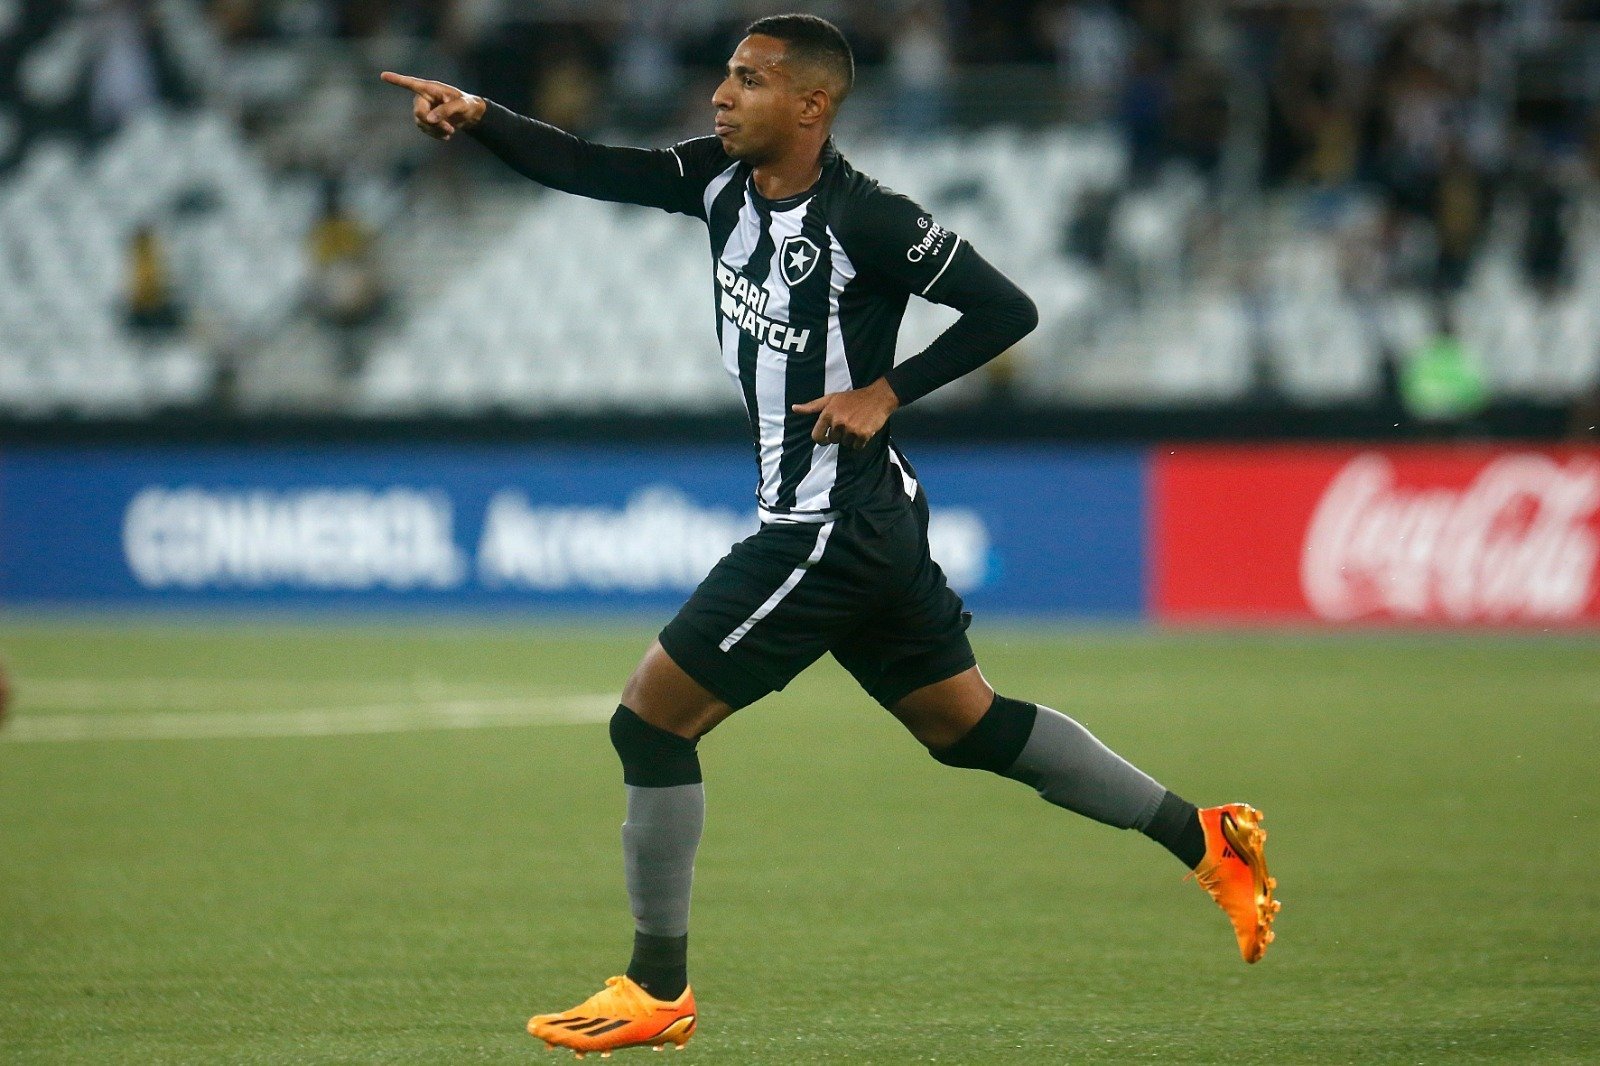 Lucas Perri analisa atuação do Botafogo, elogia LDU e projeta jogo